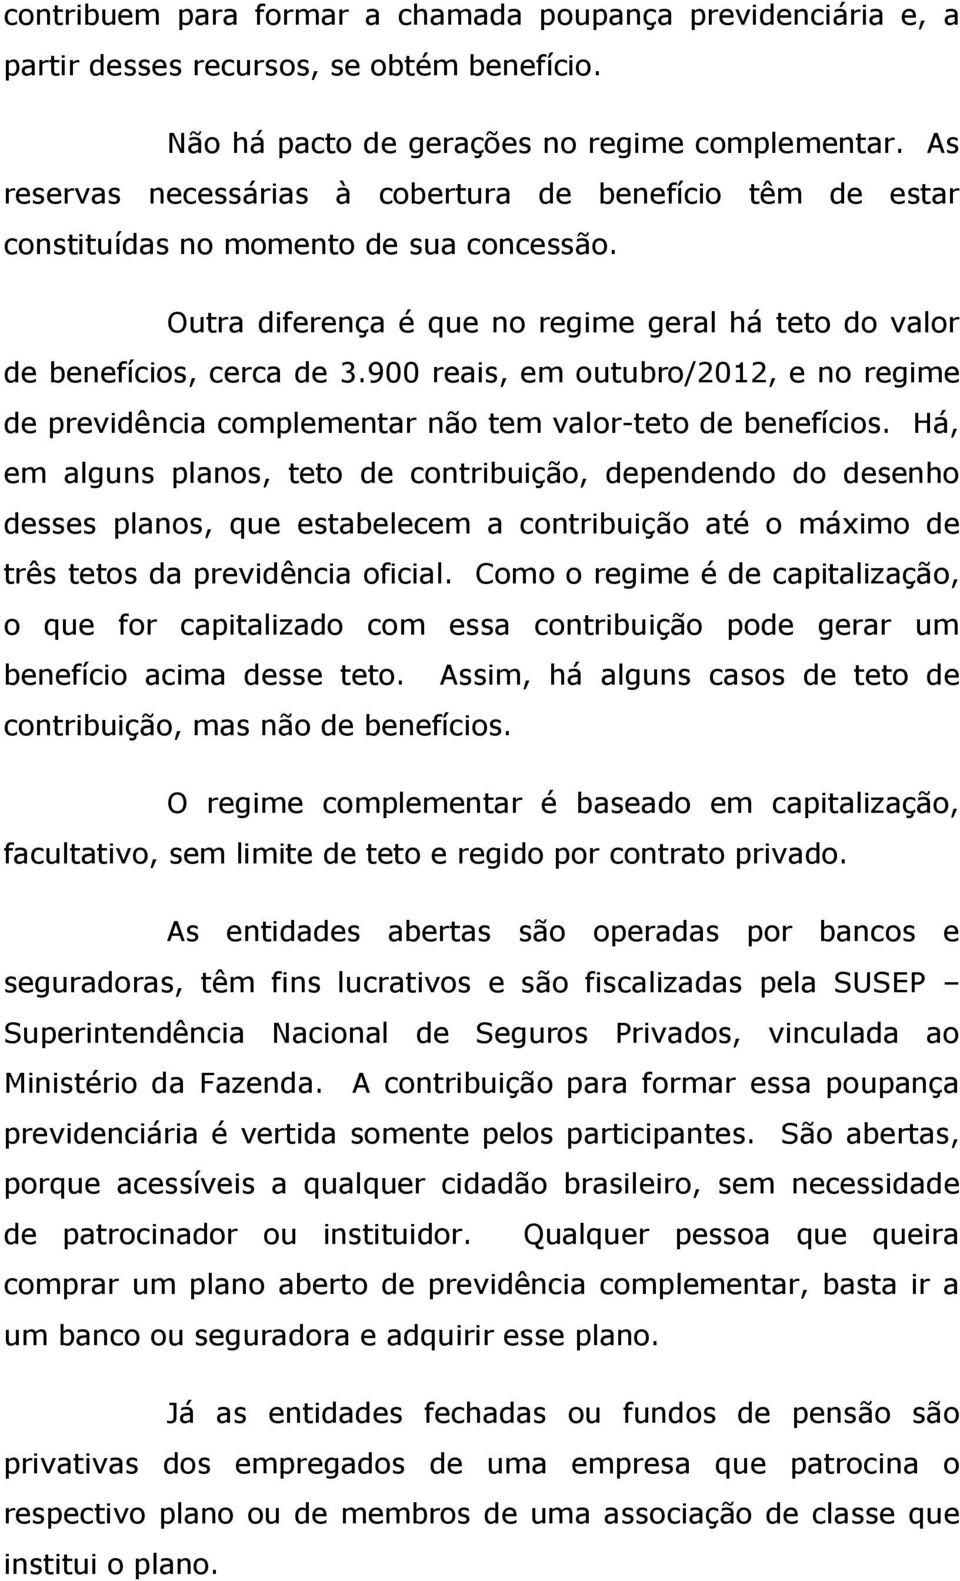 900 reais, em outubro/2012, e no regime de previdência complementar não tem valor teto de benefícios.